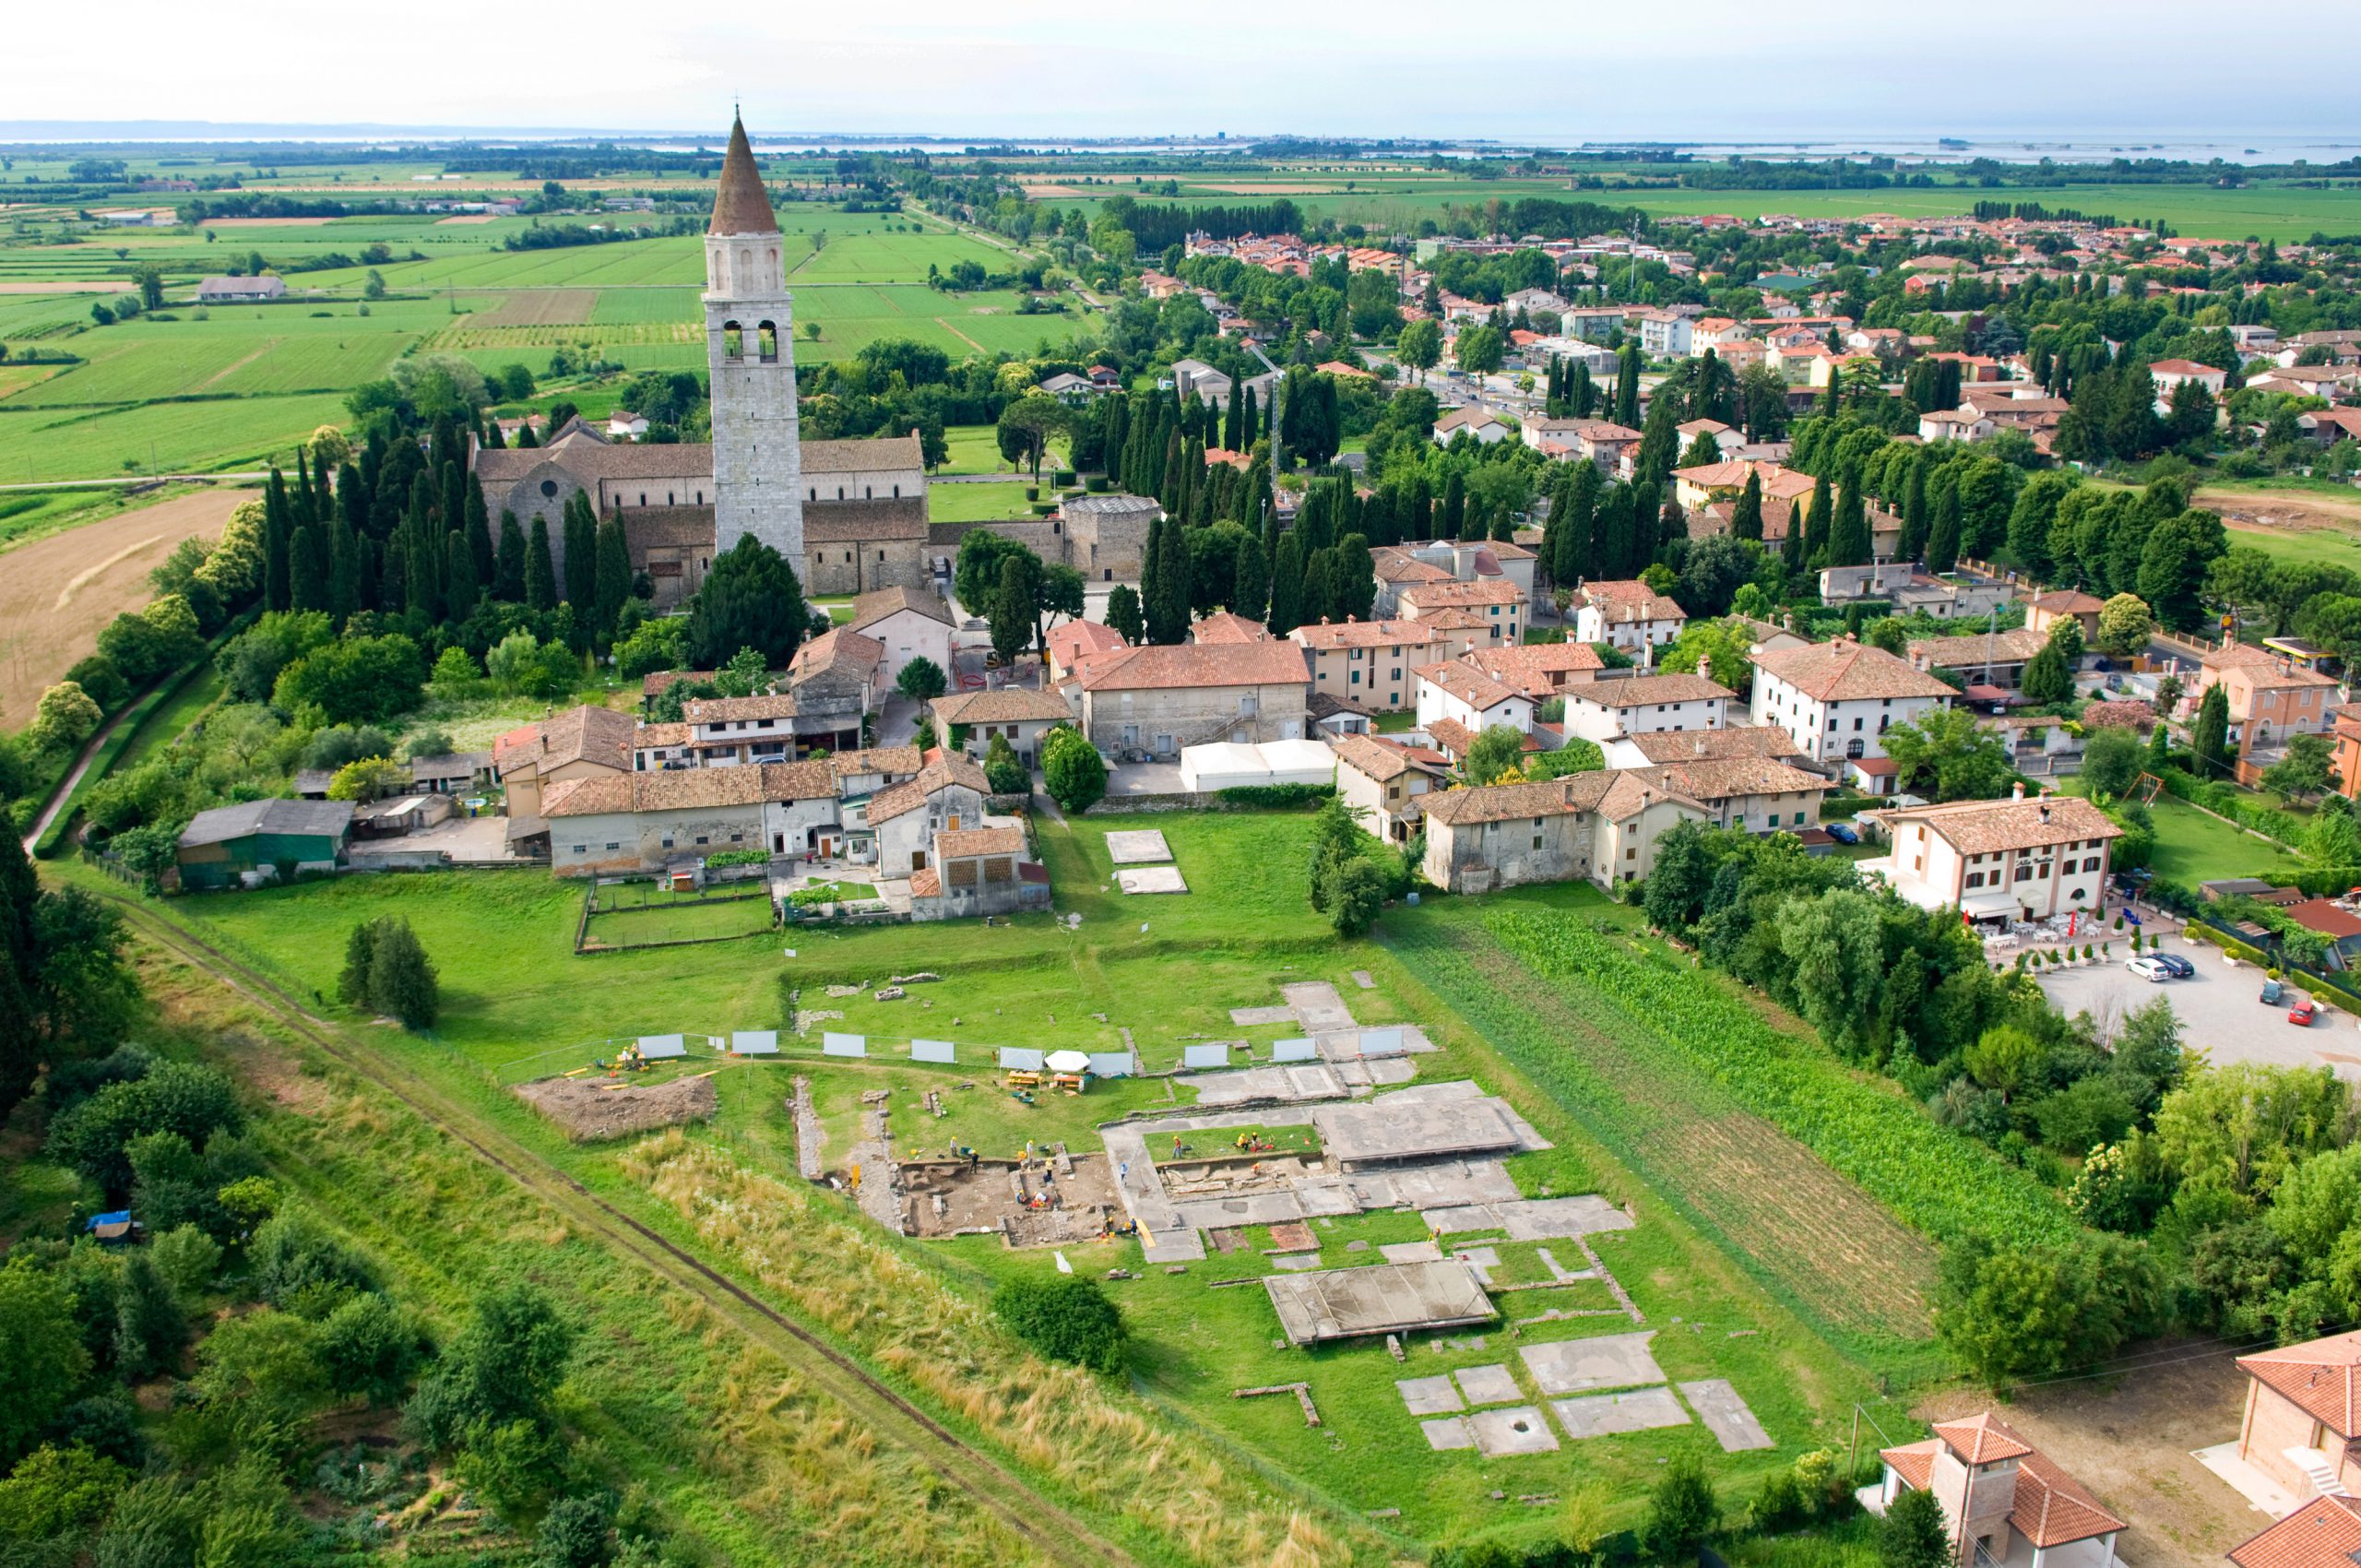 Romeinse opgravingen in Aquileia - een spannende excursie tijdens een fietsvakantie